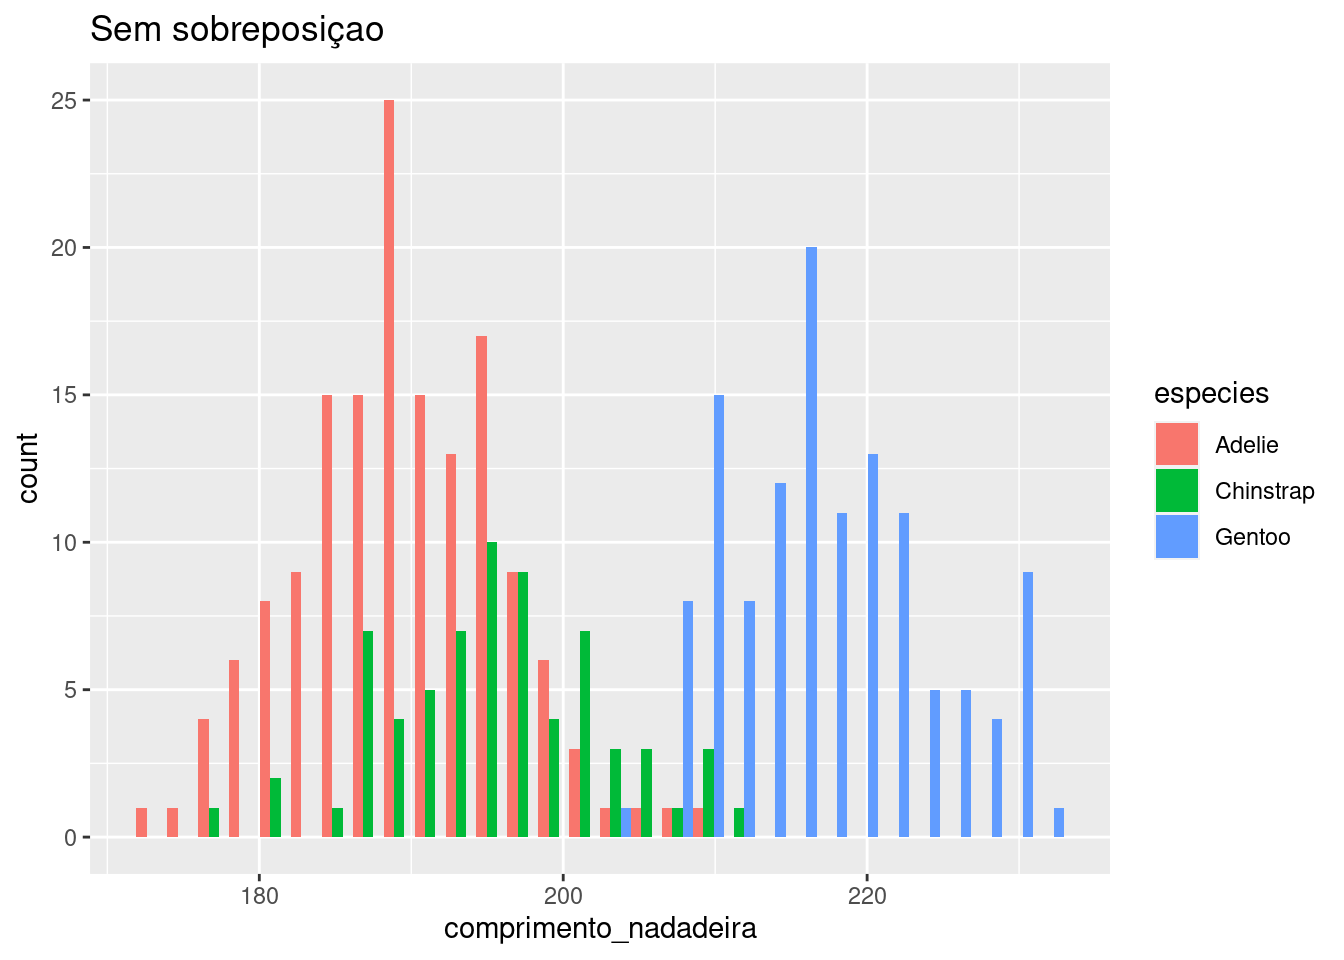 Histograma da variável `comprimento_nadadeira` para diferentes espécies com e sem sobreposição.